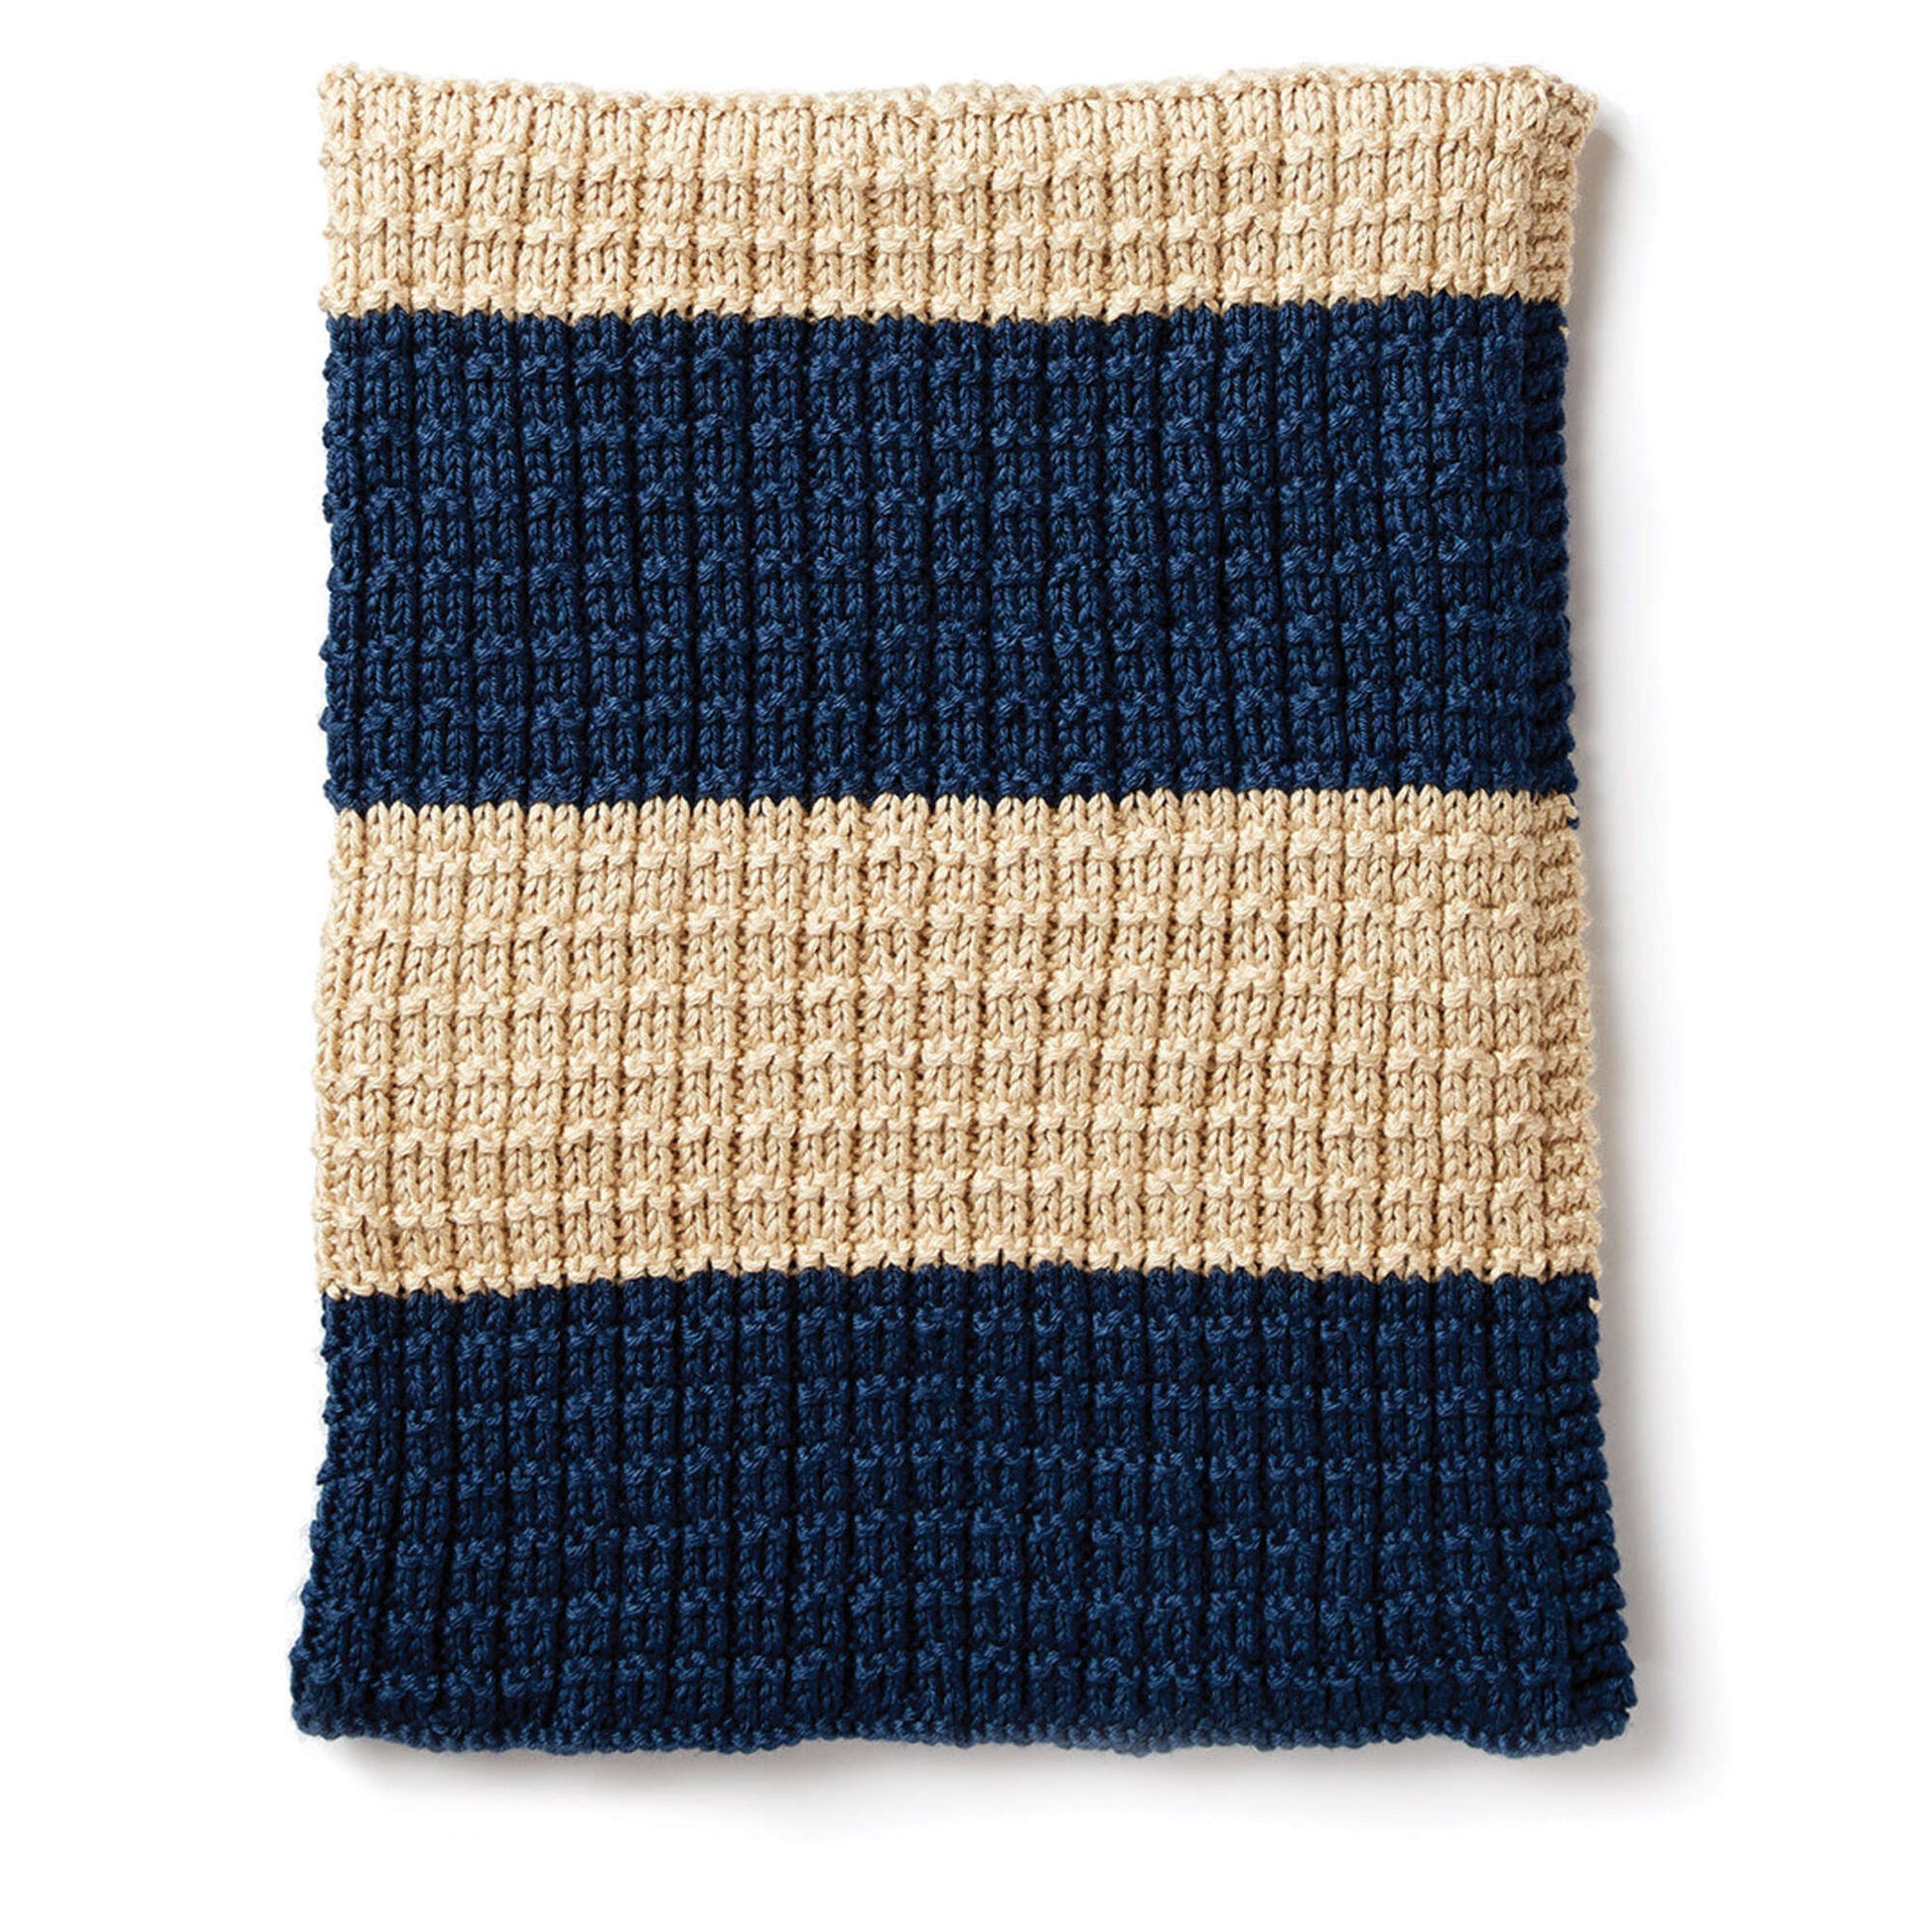 Free Caron Easy Breezy Knit Blanket Pattern